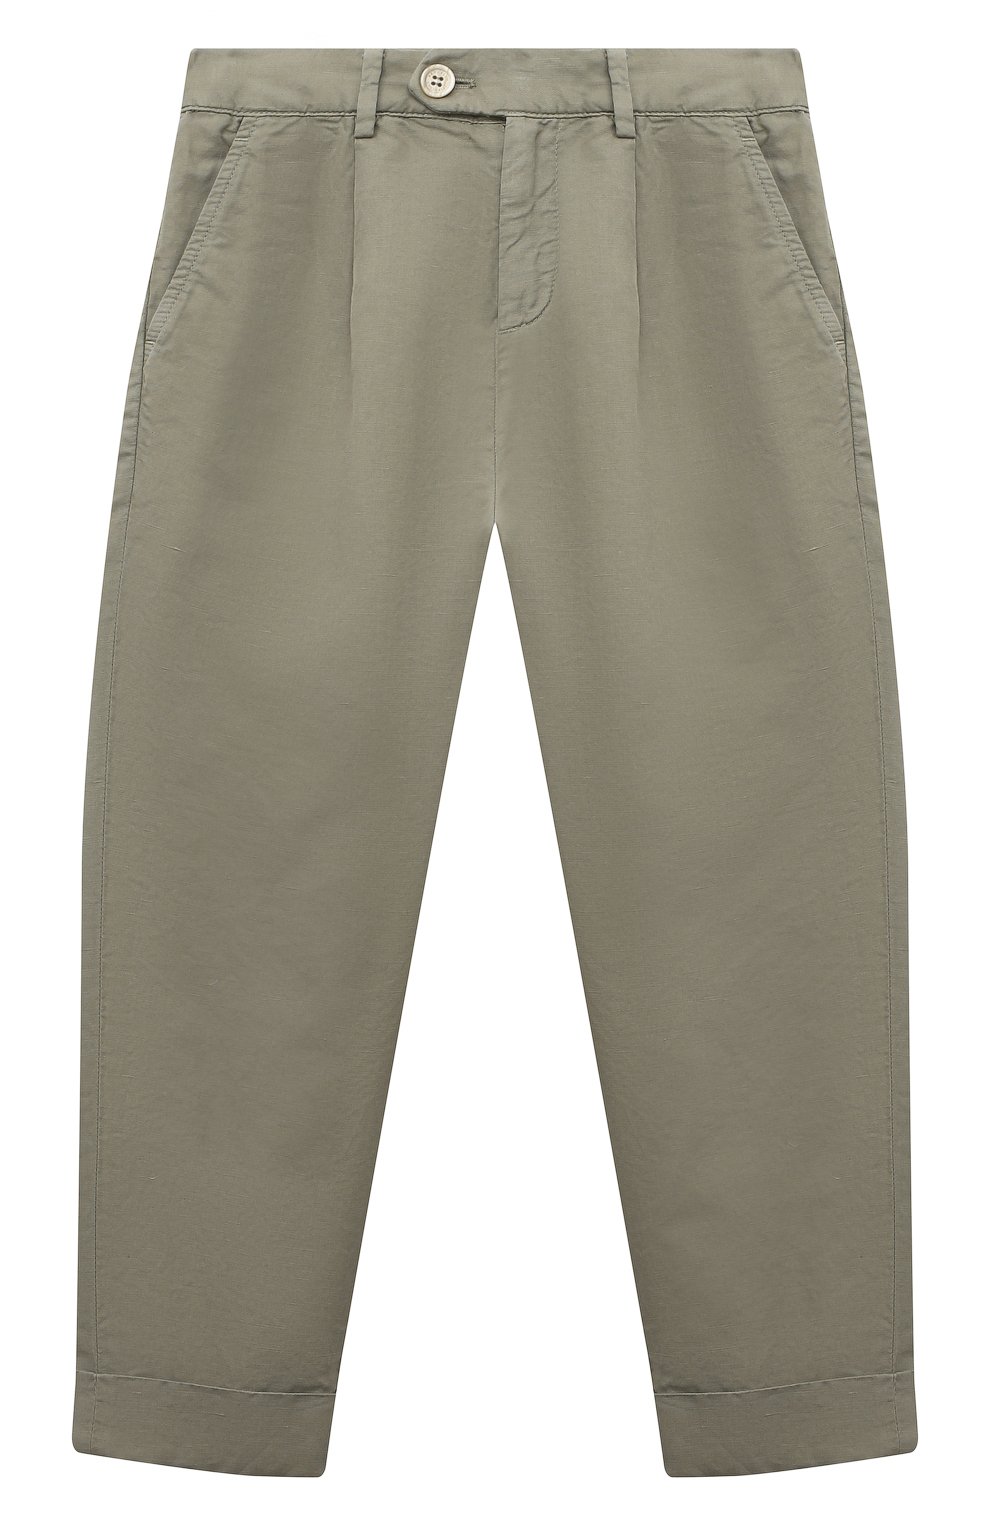 Детские брюки изо льна и хлопка BRUNELLO CUCINELLI хаки цвета, арт. B291DP100C | Фото 1 (Случай: Повседневный; Материал внешний: Хлопок, Лен)